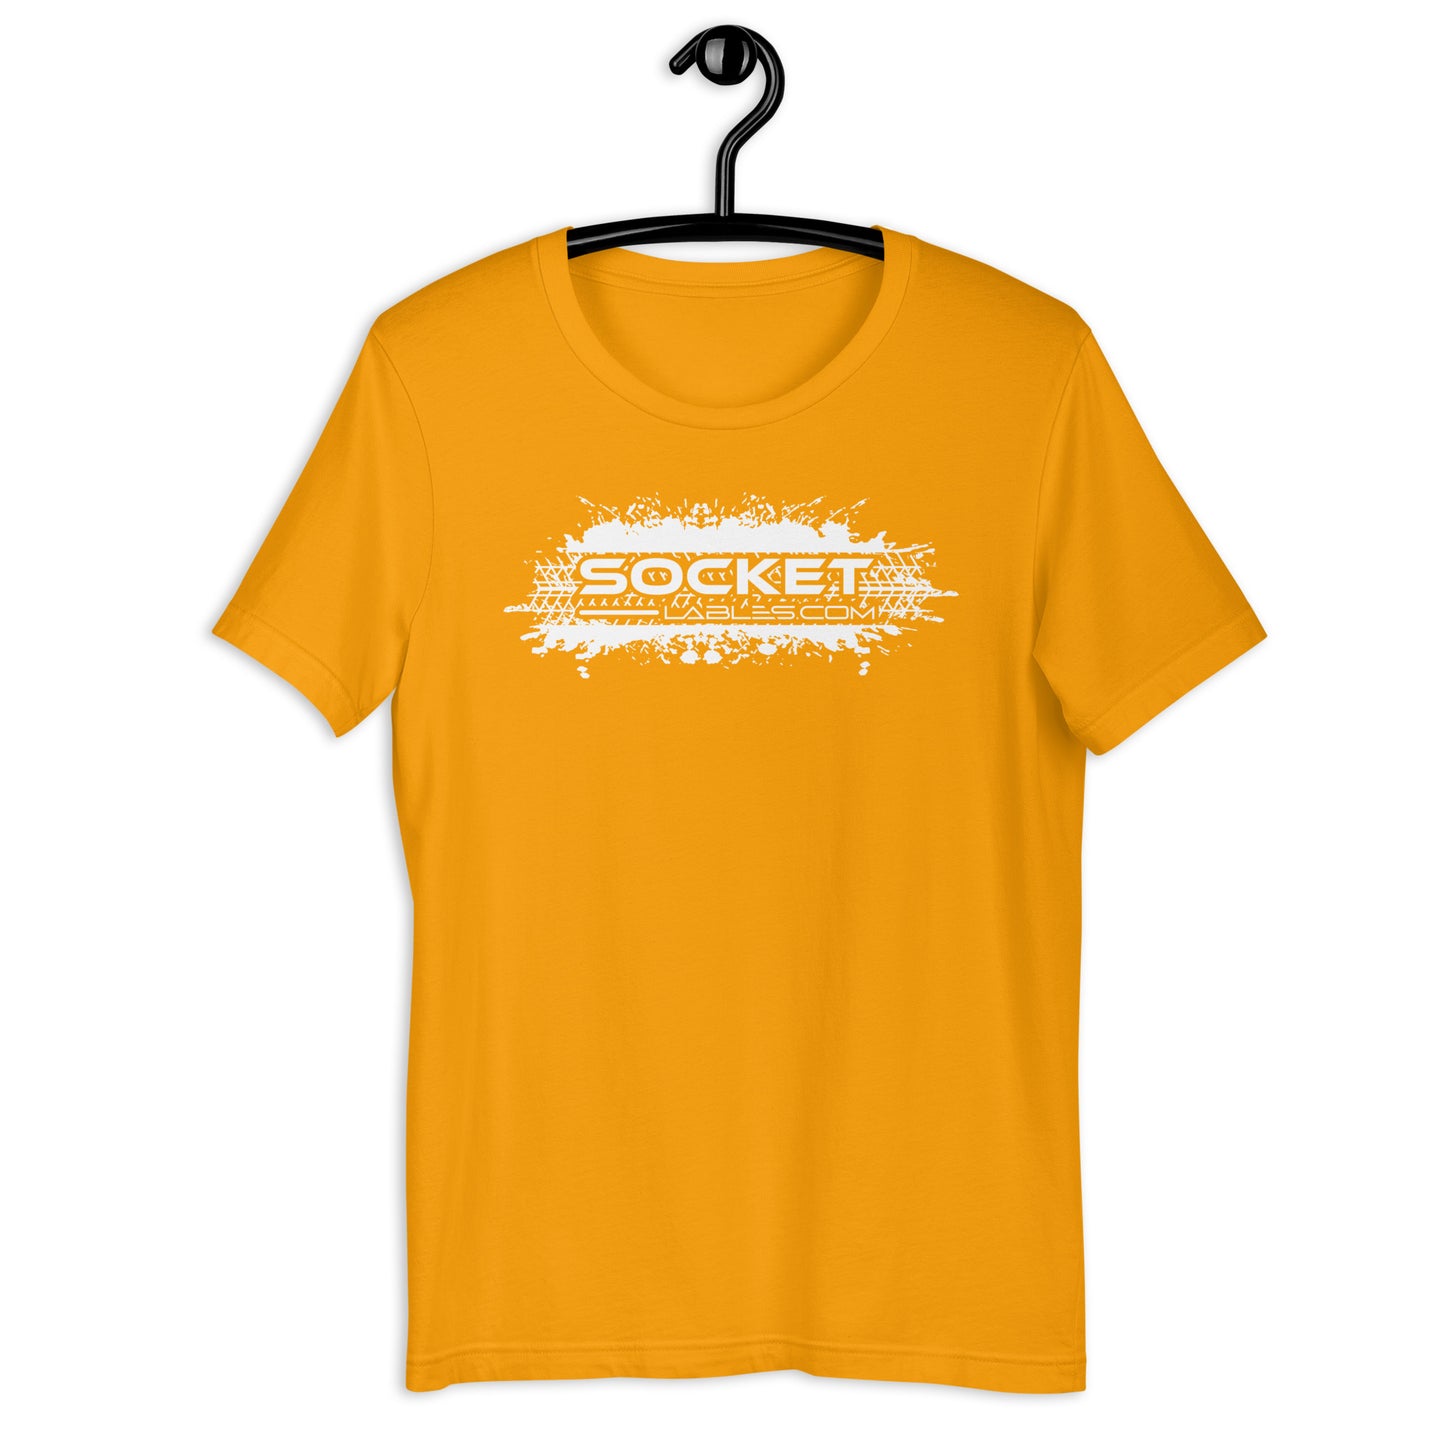 Socket Labels .com t-shirt